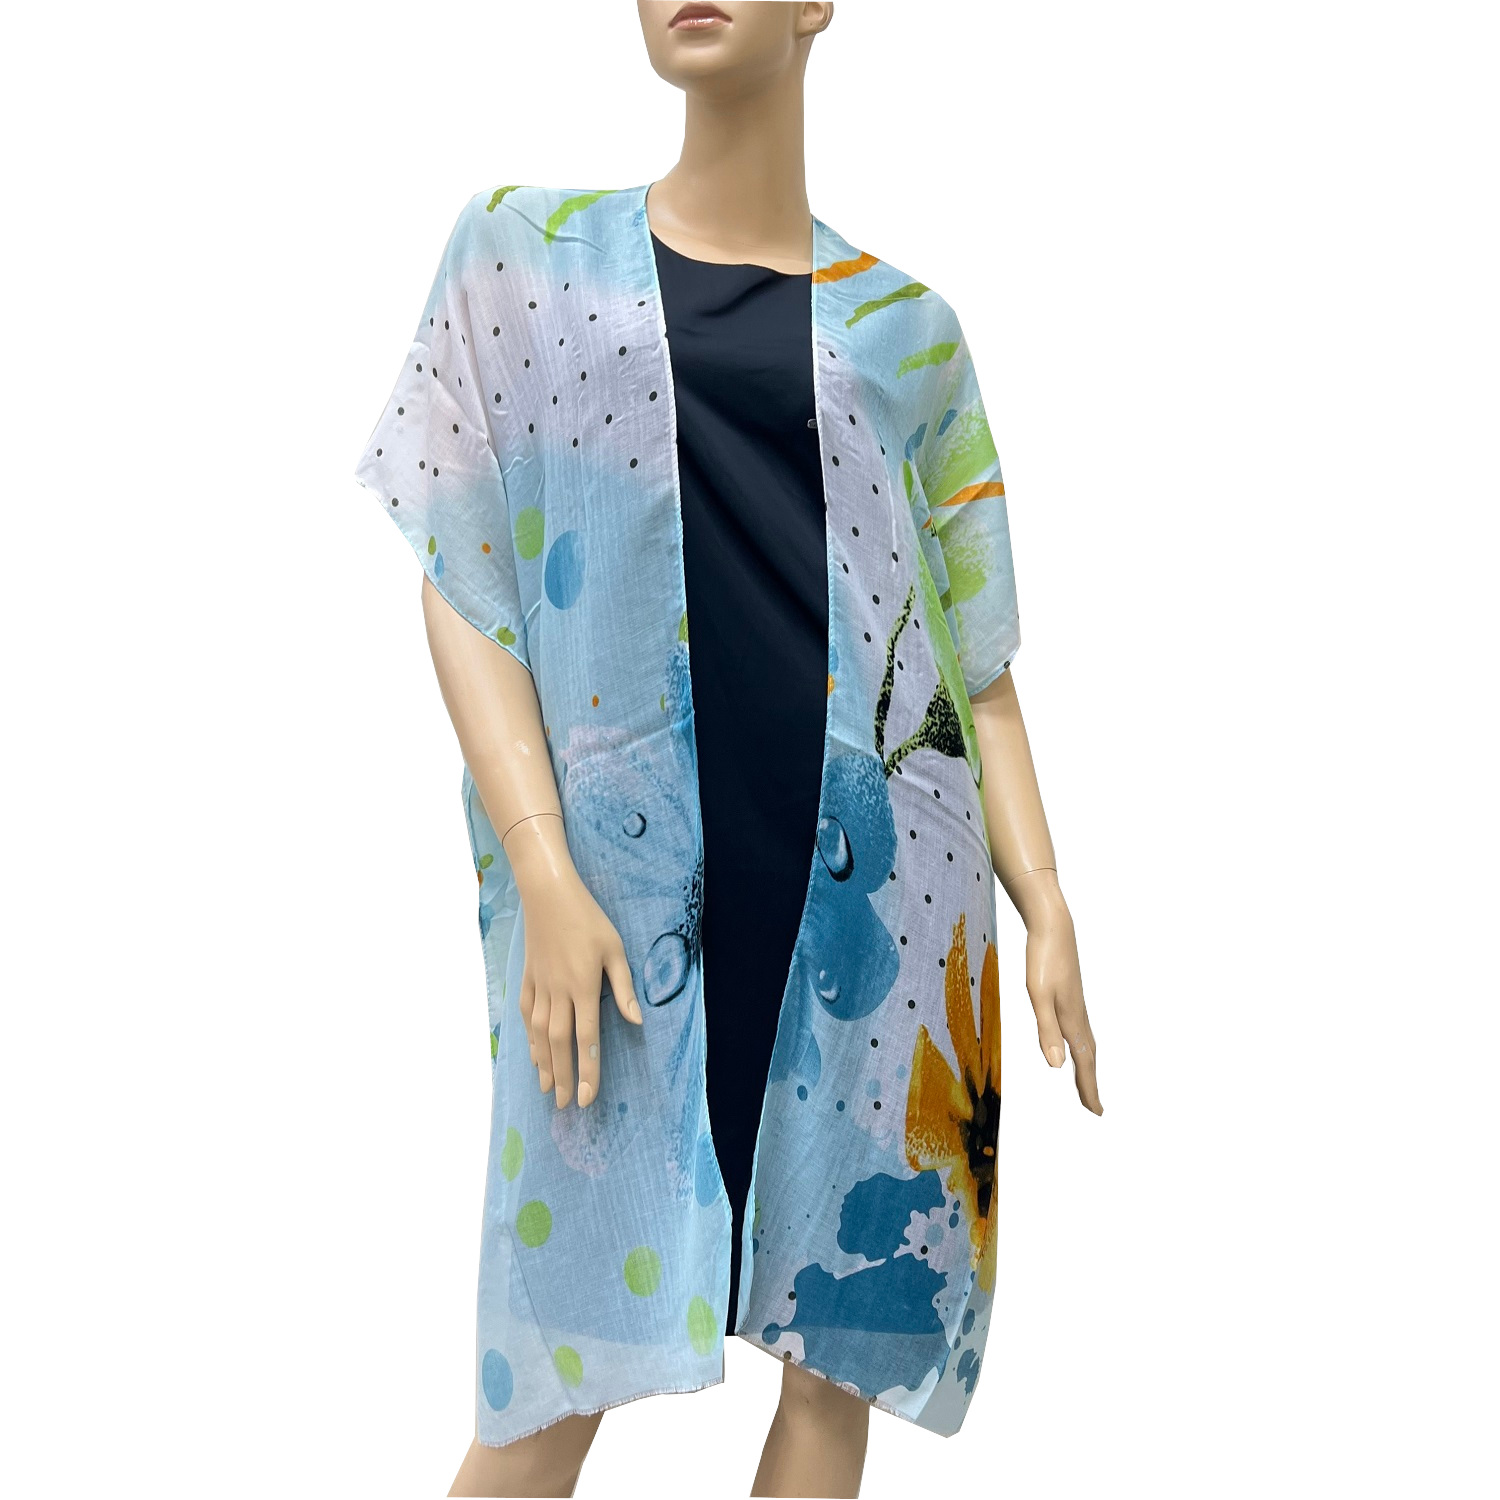 Cozy Polka Dot Floral Kimono K001-2 Powder Blue